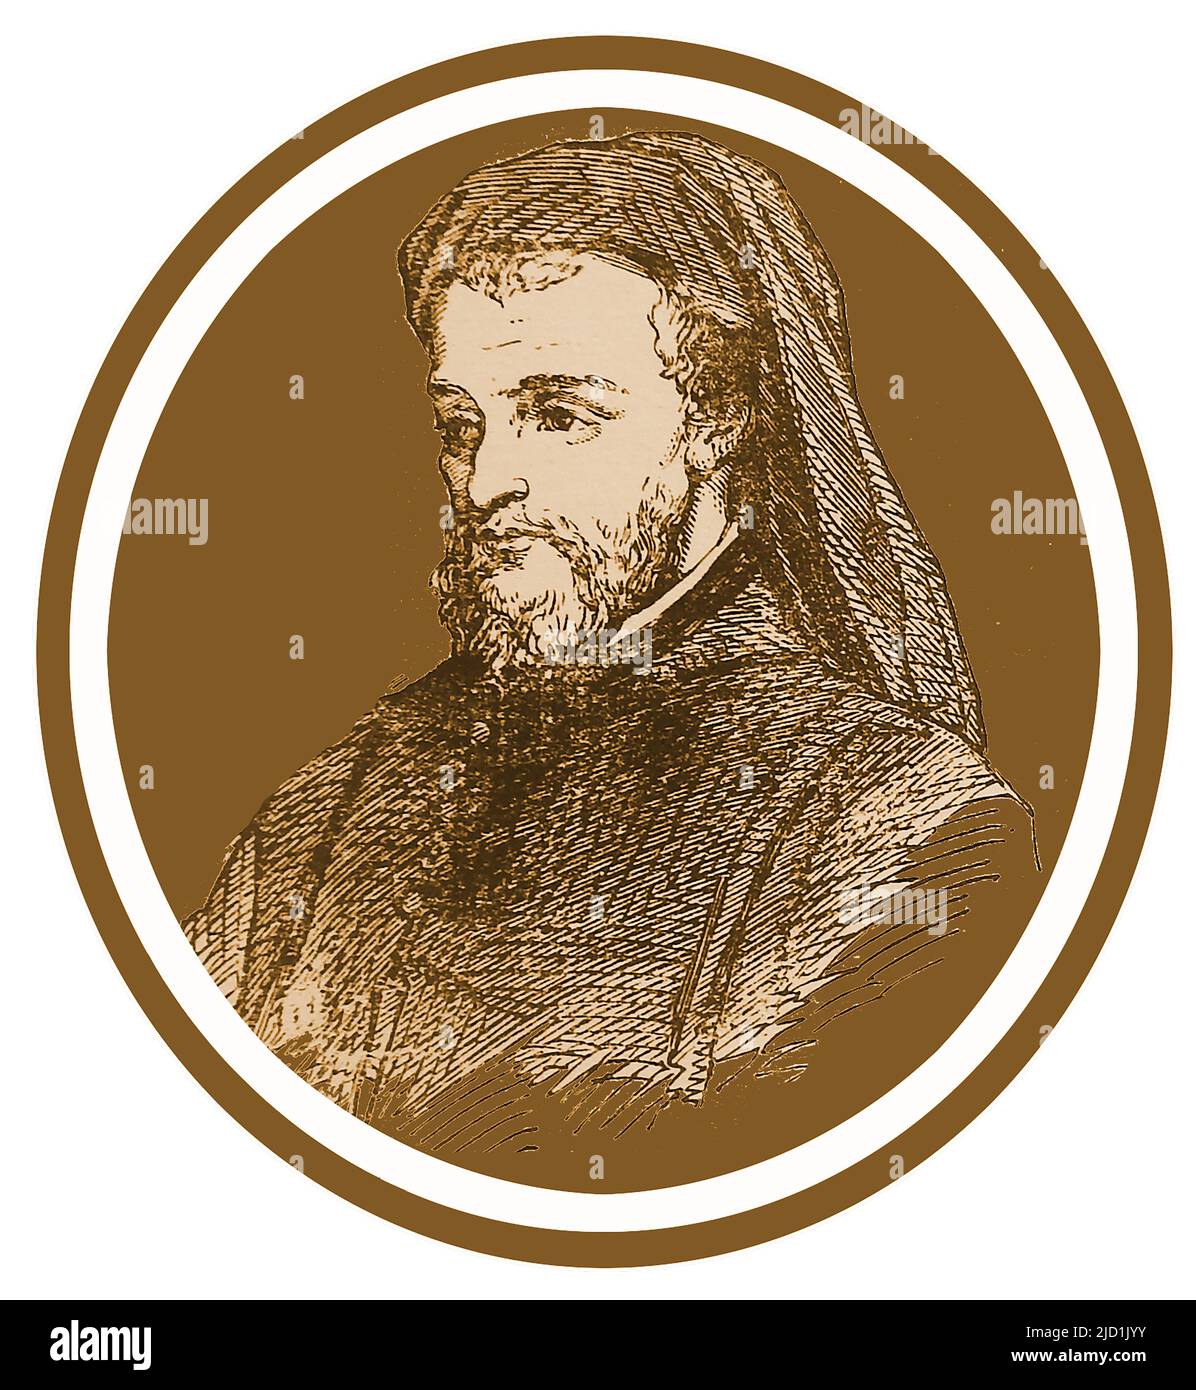 Ein frühes Porträt von Geoffrey Chaucer (1343?-1400) englischer Schriftsteller, Dichter, Autor, Philosoph, Astronom und Beamter. Er ist auch als stellvertretender Forester im königlichen Wald des Petherton Park in North Petherton, Somerset, registriert. Sein berühmtestes Werk sind die Canterbury Tales , und er wird manchmal als "der Vater der englischen Literatur" oder "der Vater der englischen Poesie" in Erinnerung gerufen. Er arbeitete auch als Beamter, Bürokrat, Höfling, Diplomat und Mitglied des parlaments.Er war der erste Schriftsteller, der in dem, was heute Poets' Corner heißt, in Westminster Abbey, begraben wurde. Stockfoto